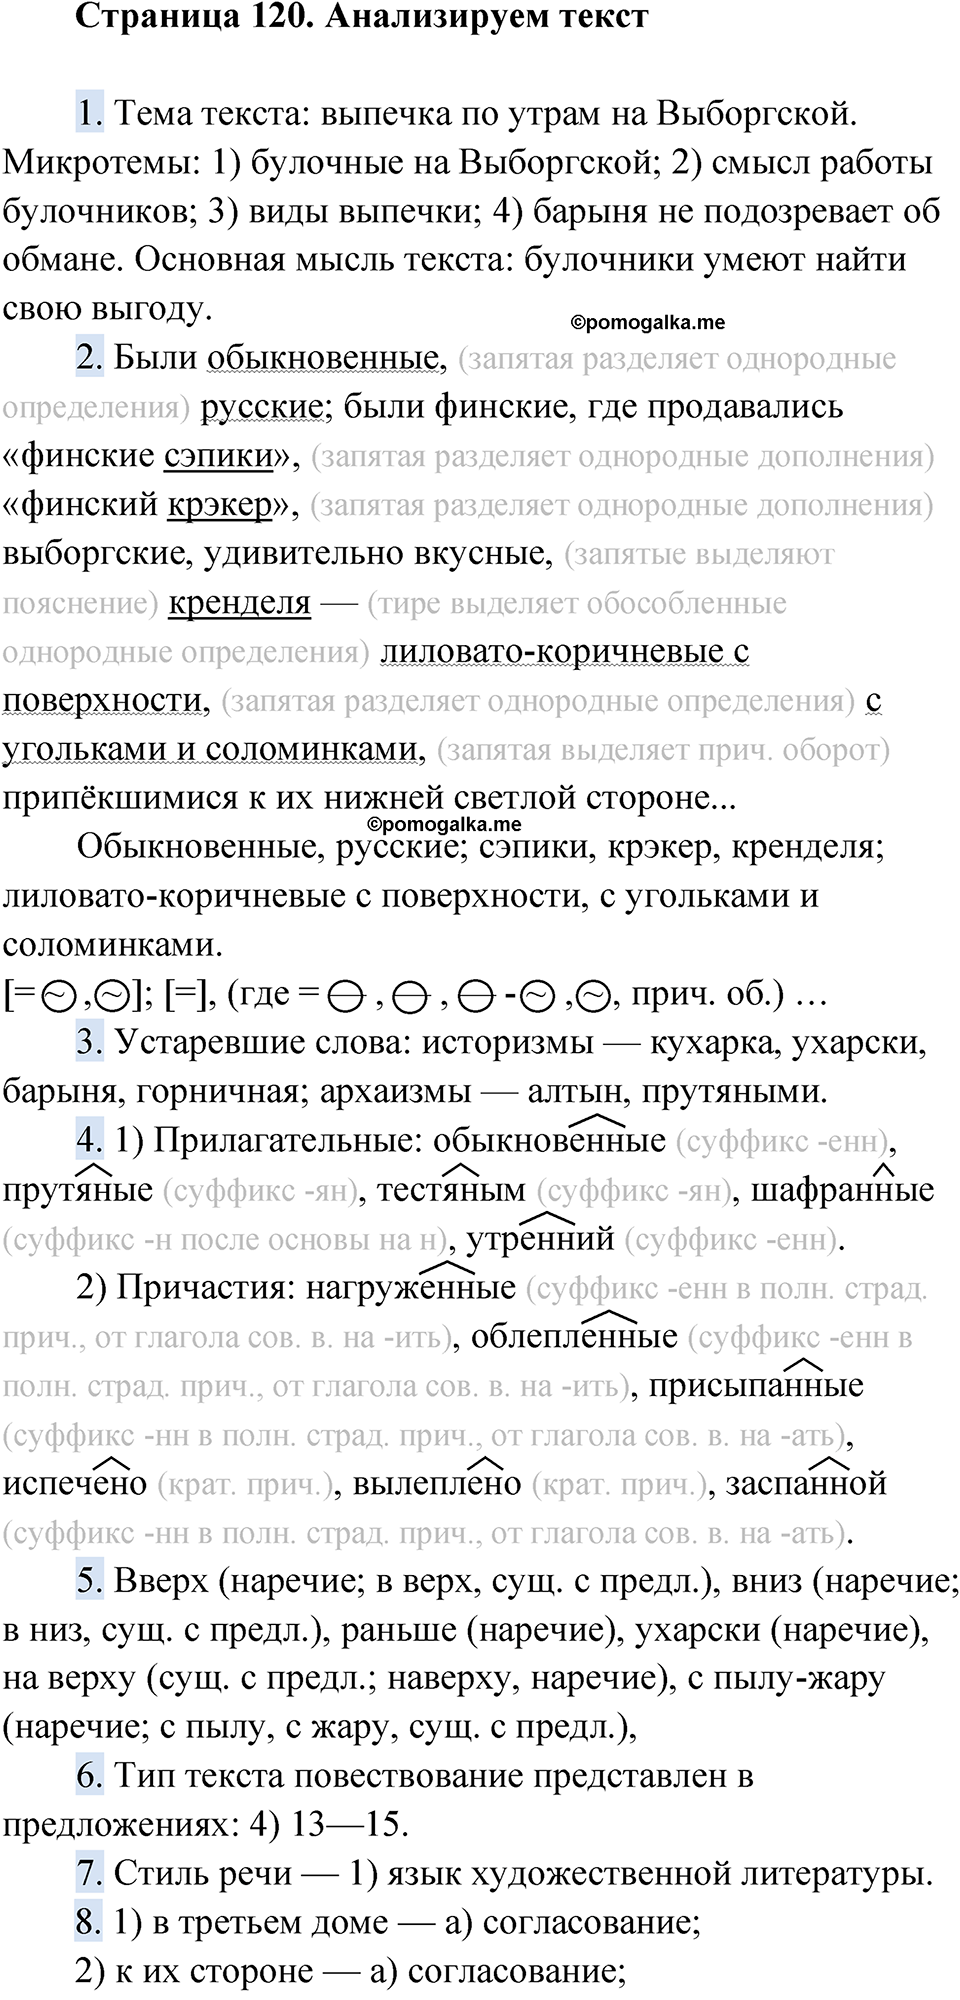 страница 120 Анализируем текст русский язык 9 класс Быстрова 1 часть 2022 год